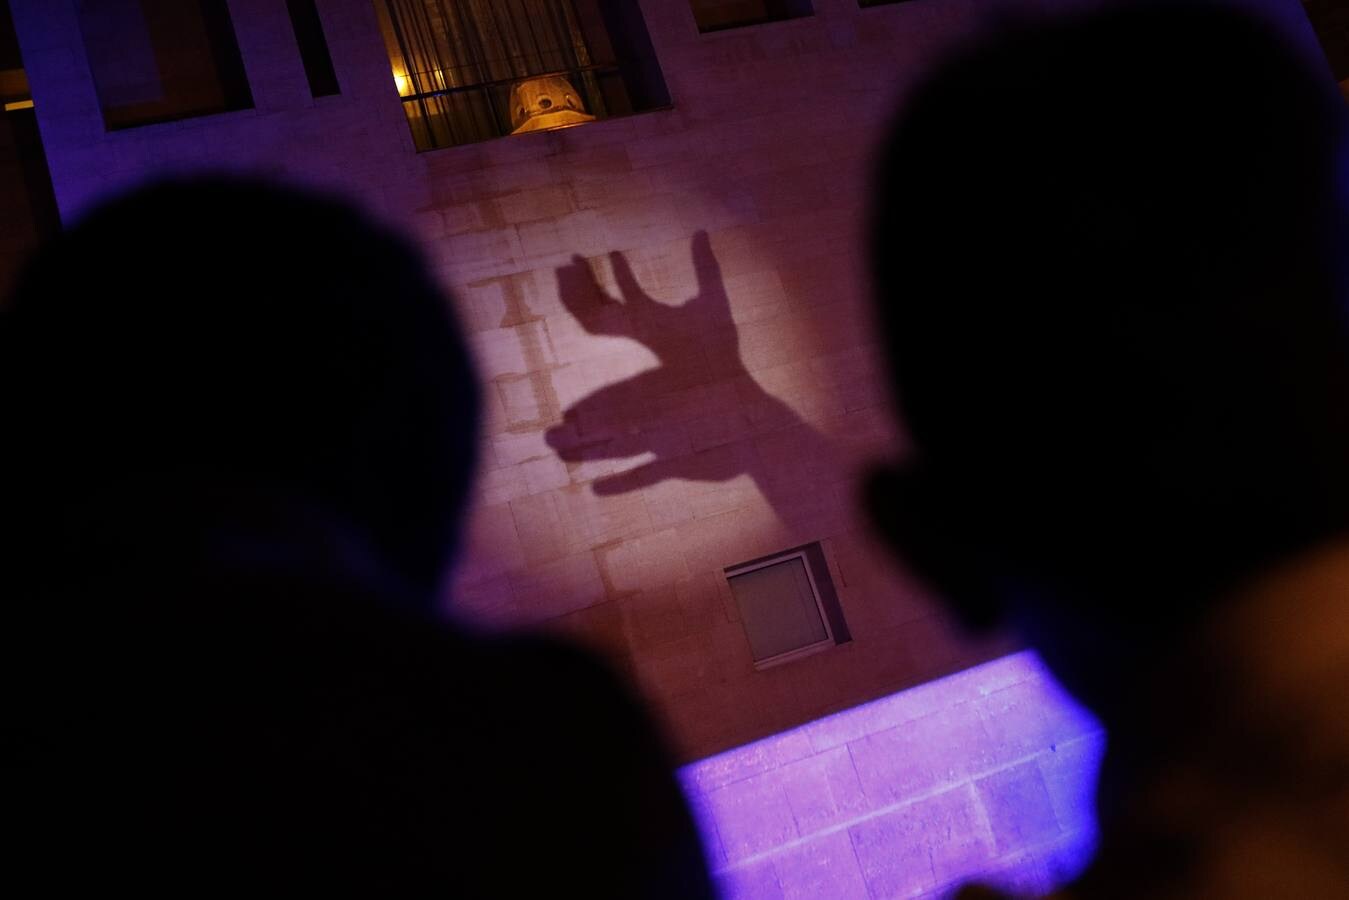 El espectáculo de sombras chinescas sobre la fachada del Moneo, que se retrasó dos días sobre lo anunciado en la programación, fue este jueves una sorpresa para los transeúntes y turistas que cruzaban por la plaza de Belluga